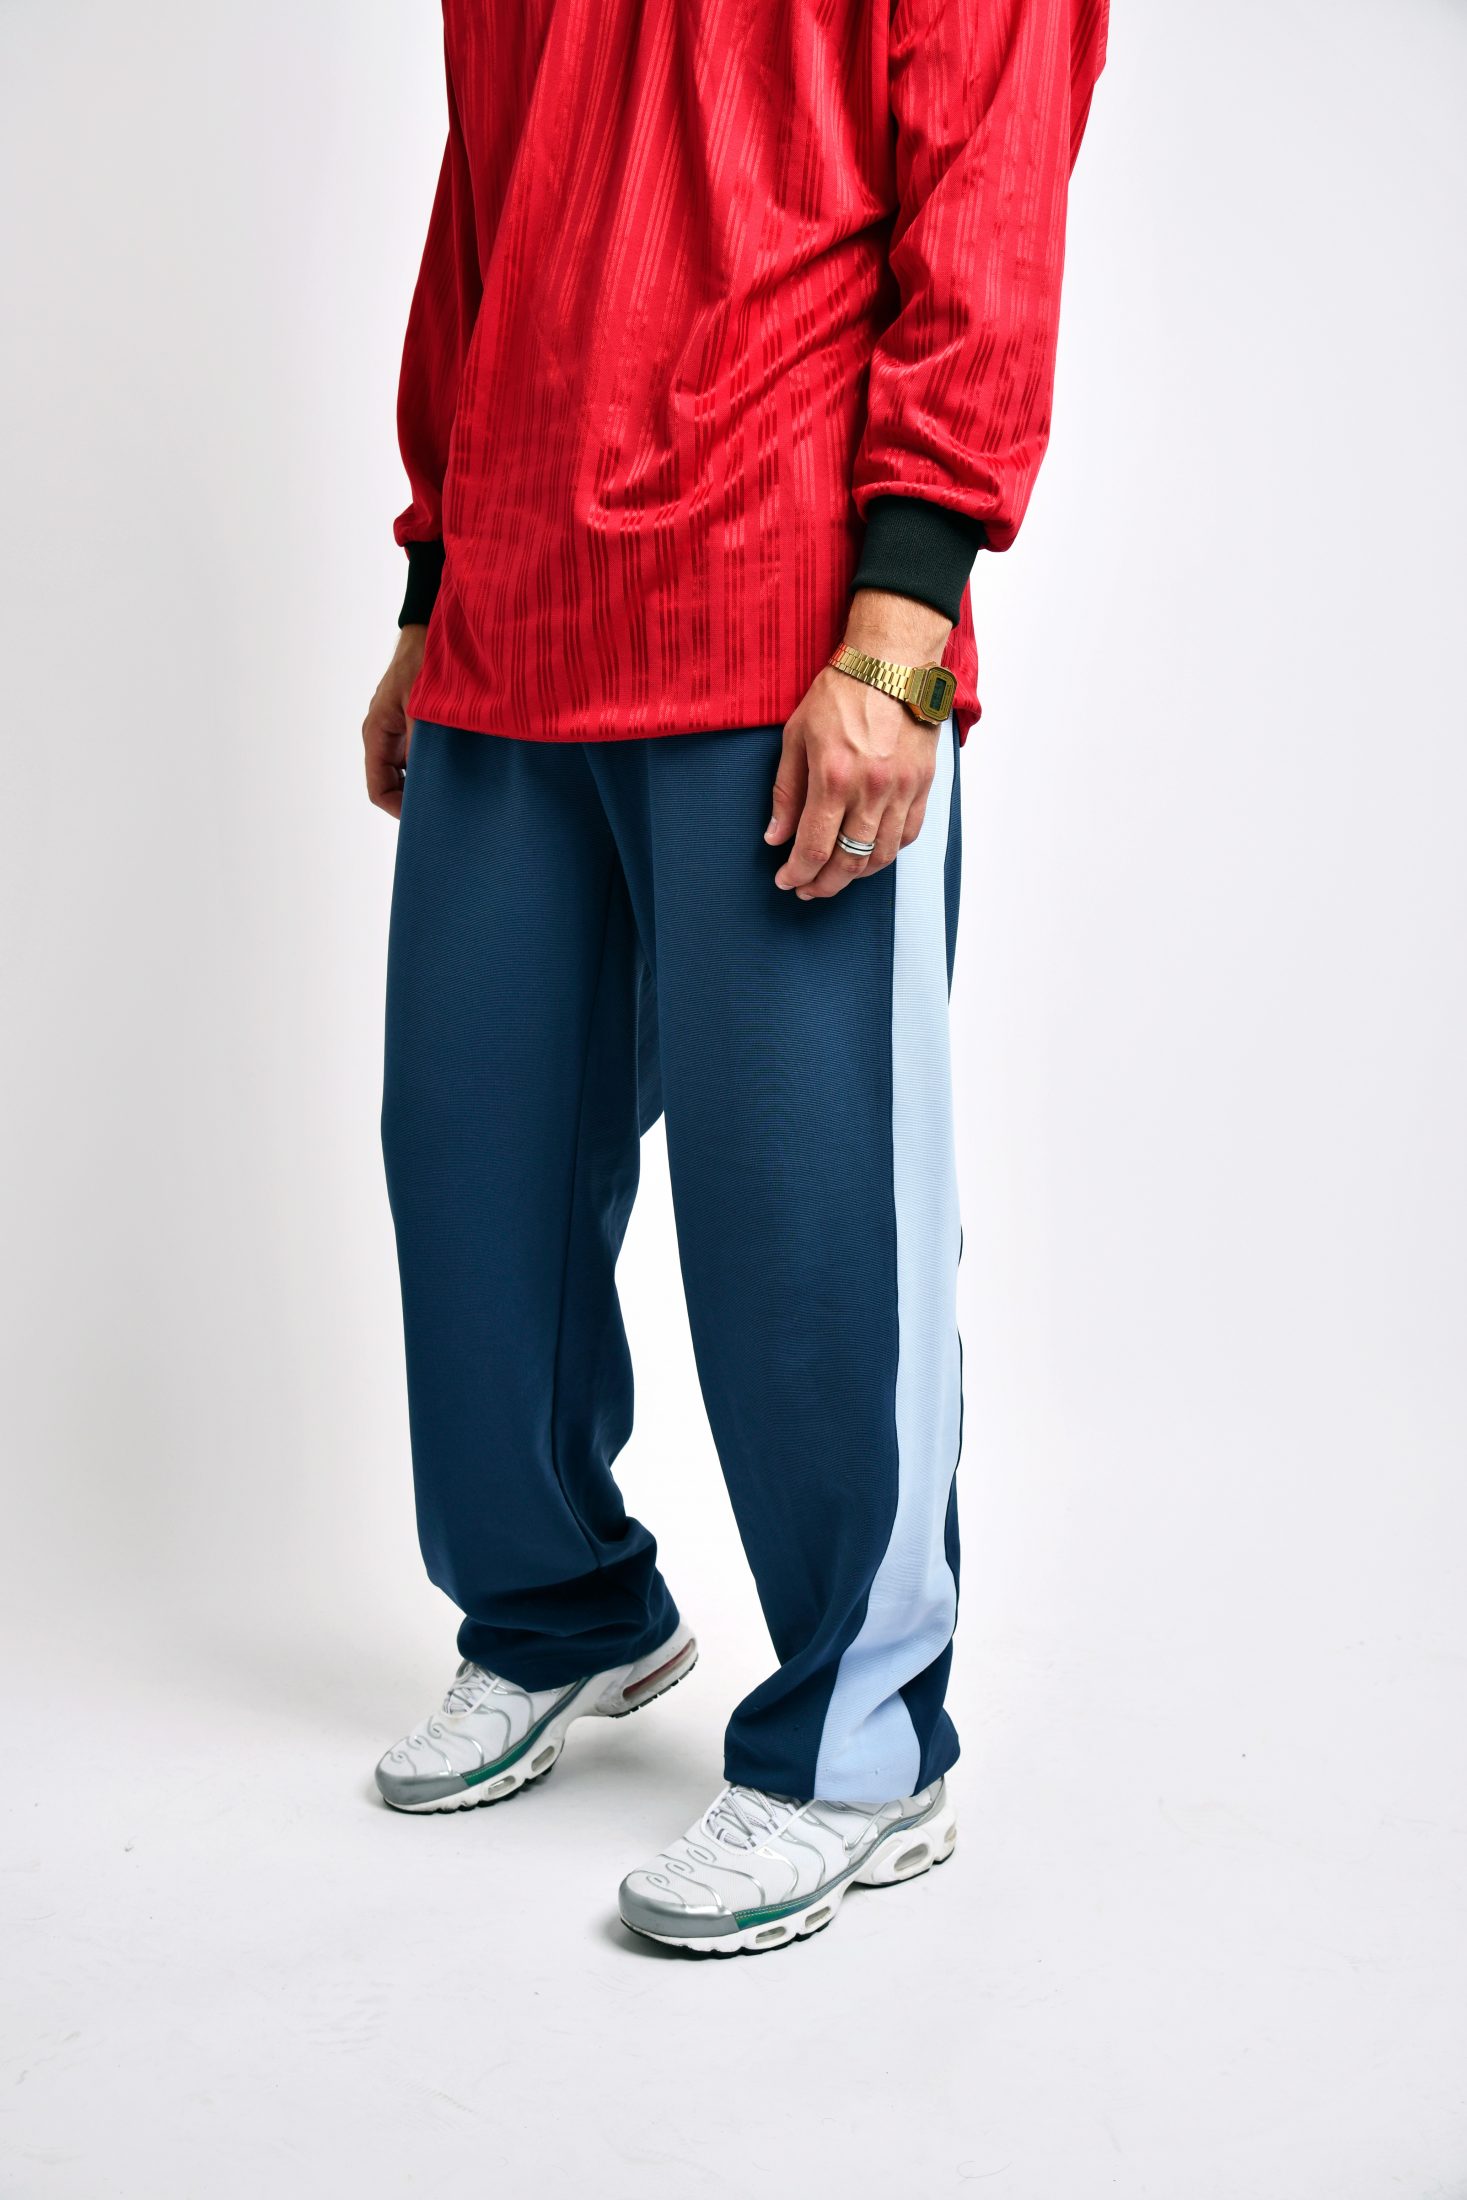 klok Kan niet lezen of schrijven Huiskamer KAPPA vintage mens pants | Vintage clothes online for men